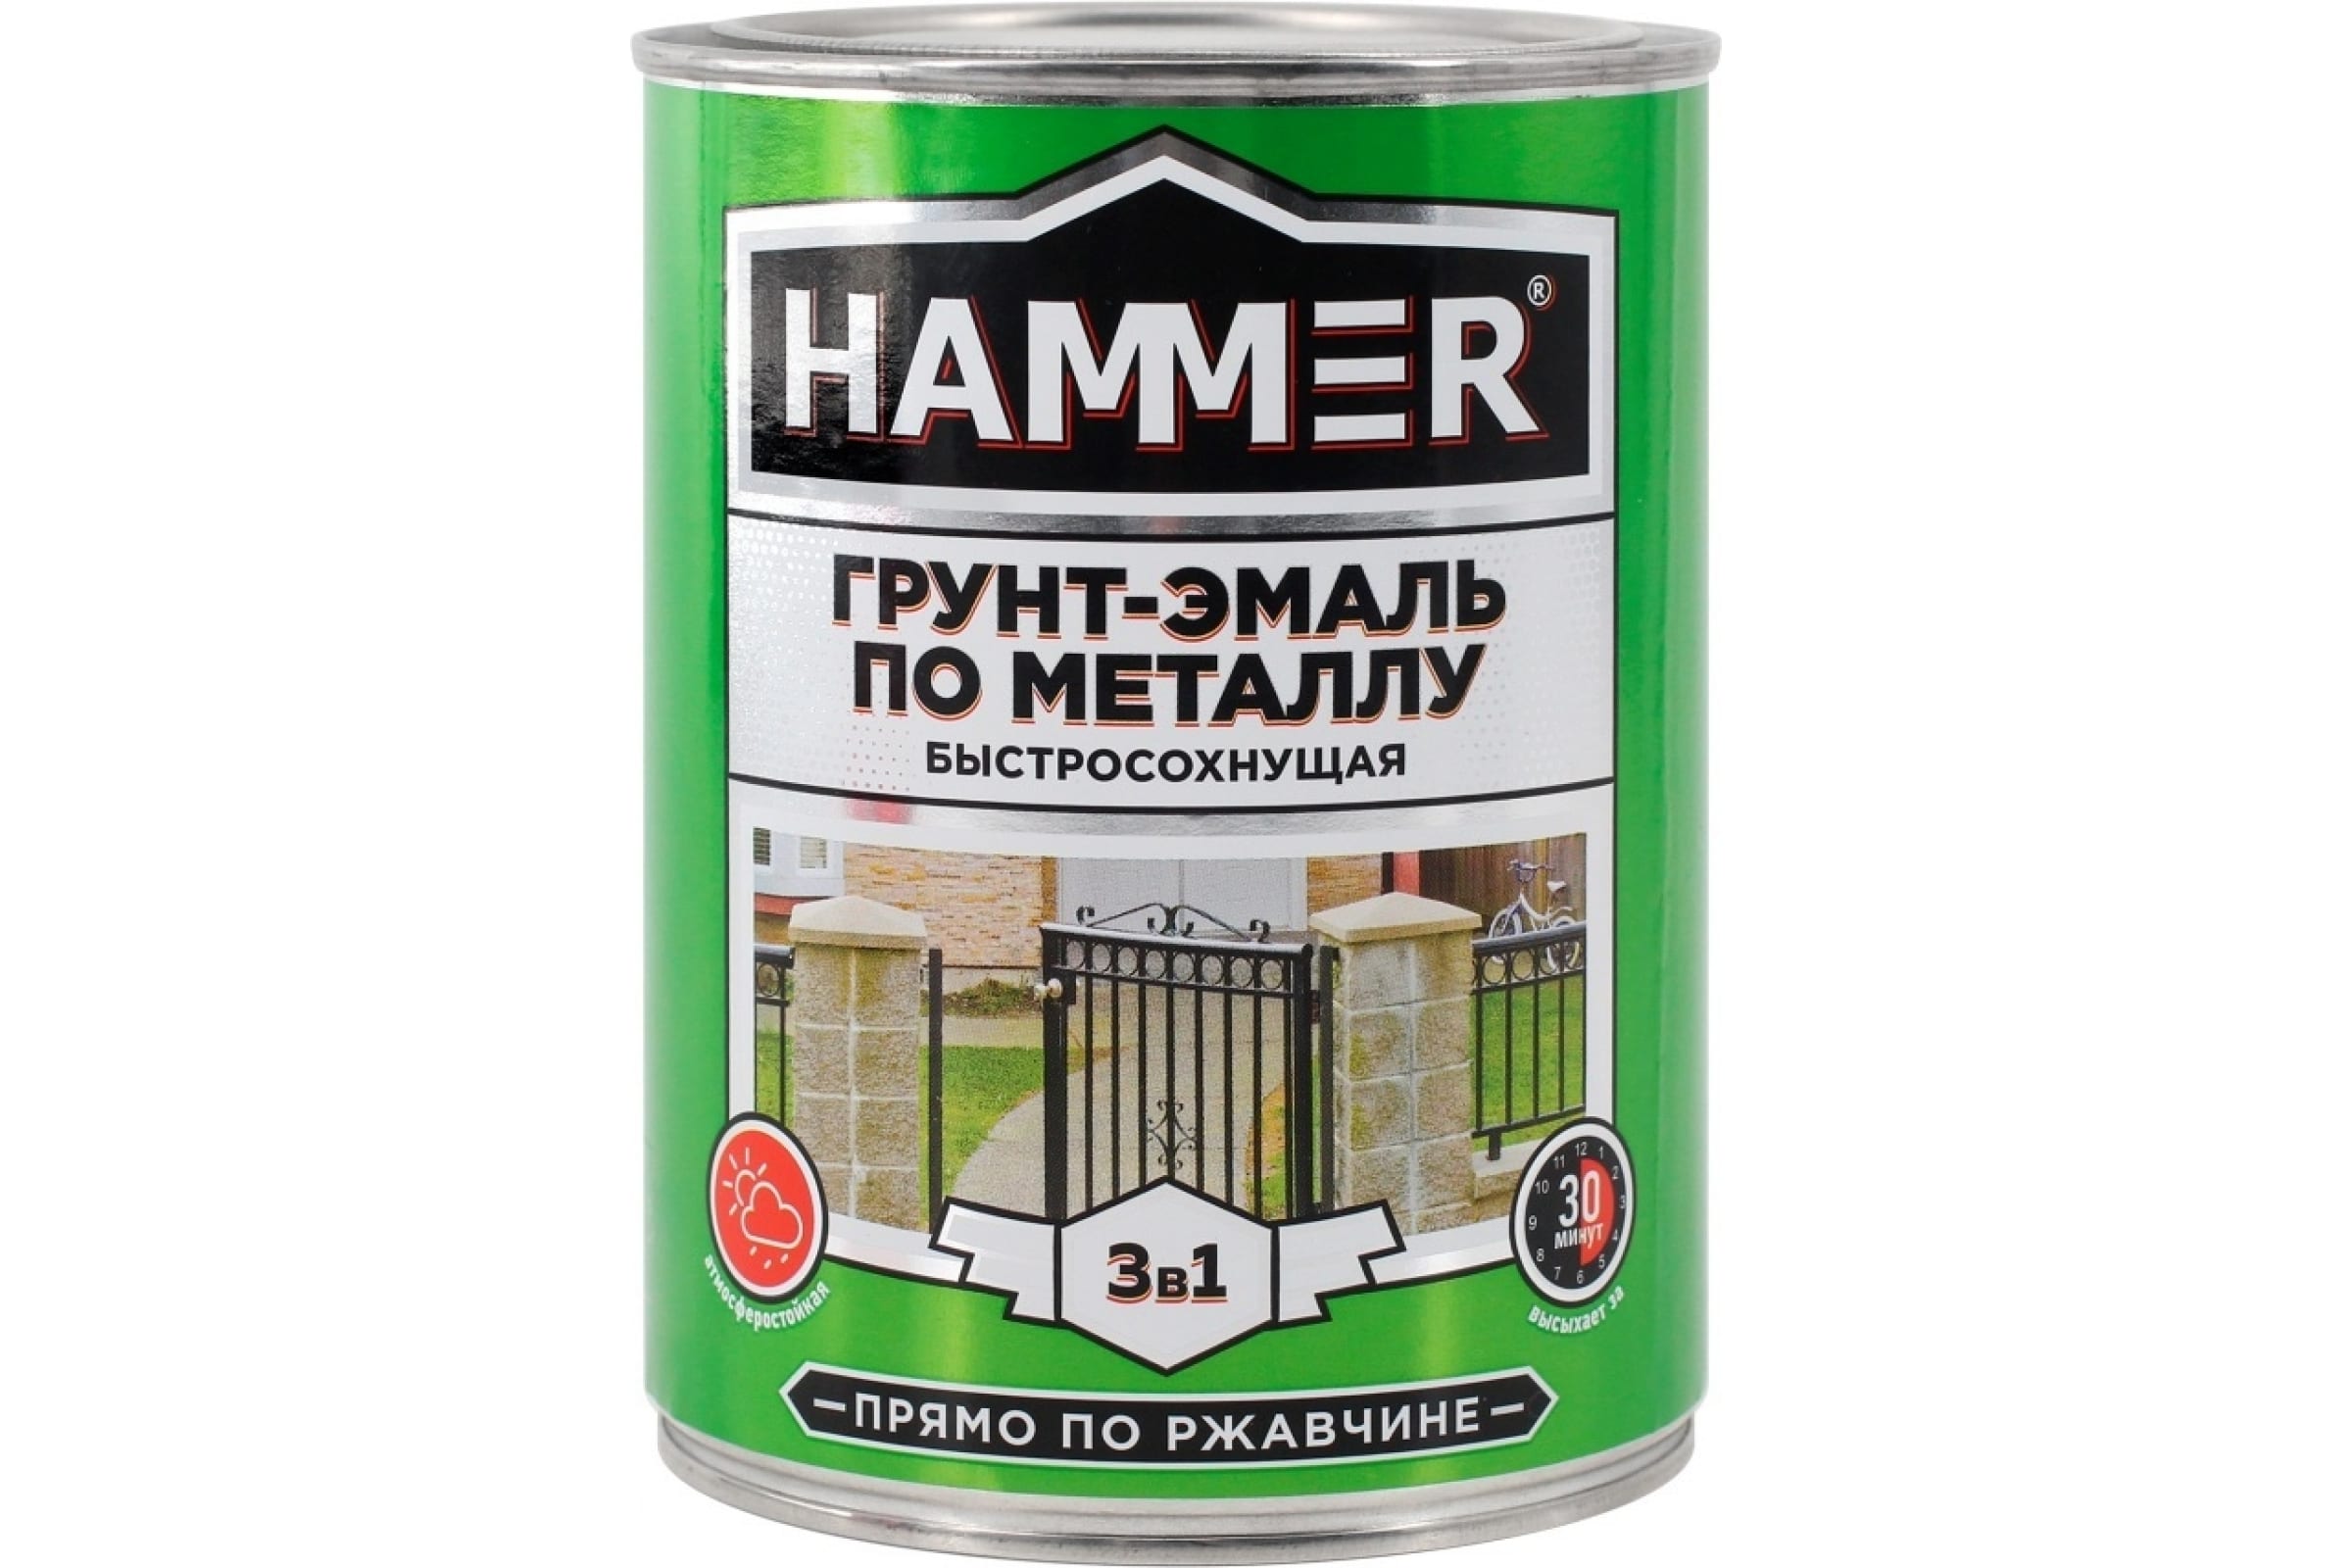 HAMMER Грунт-эмаль по металлу 3 в 1 б/с черная 0,9 кг / 6 ЭК000116572